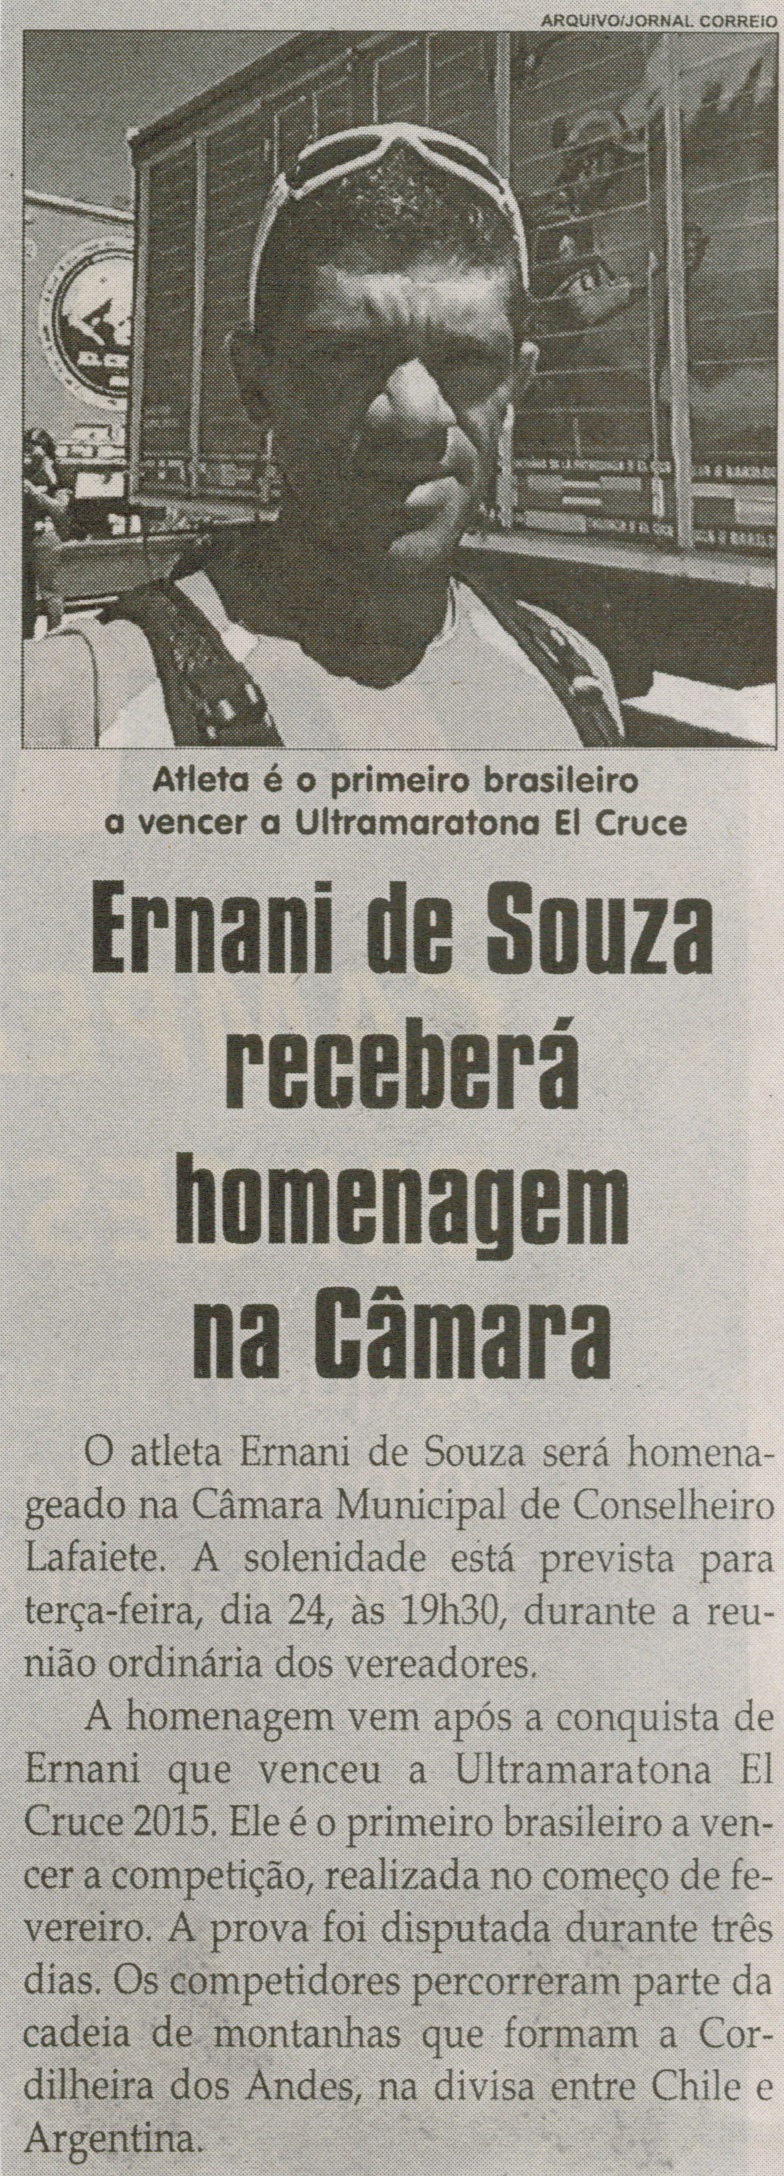 Ernani de Souza receberá homenagem na Câmara. Jornal Correio da Cidade, Conselheiro Lafaiete, 21 fev. 2015, p. 06.